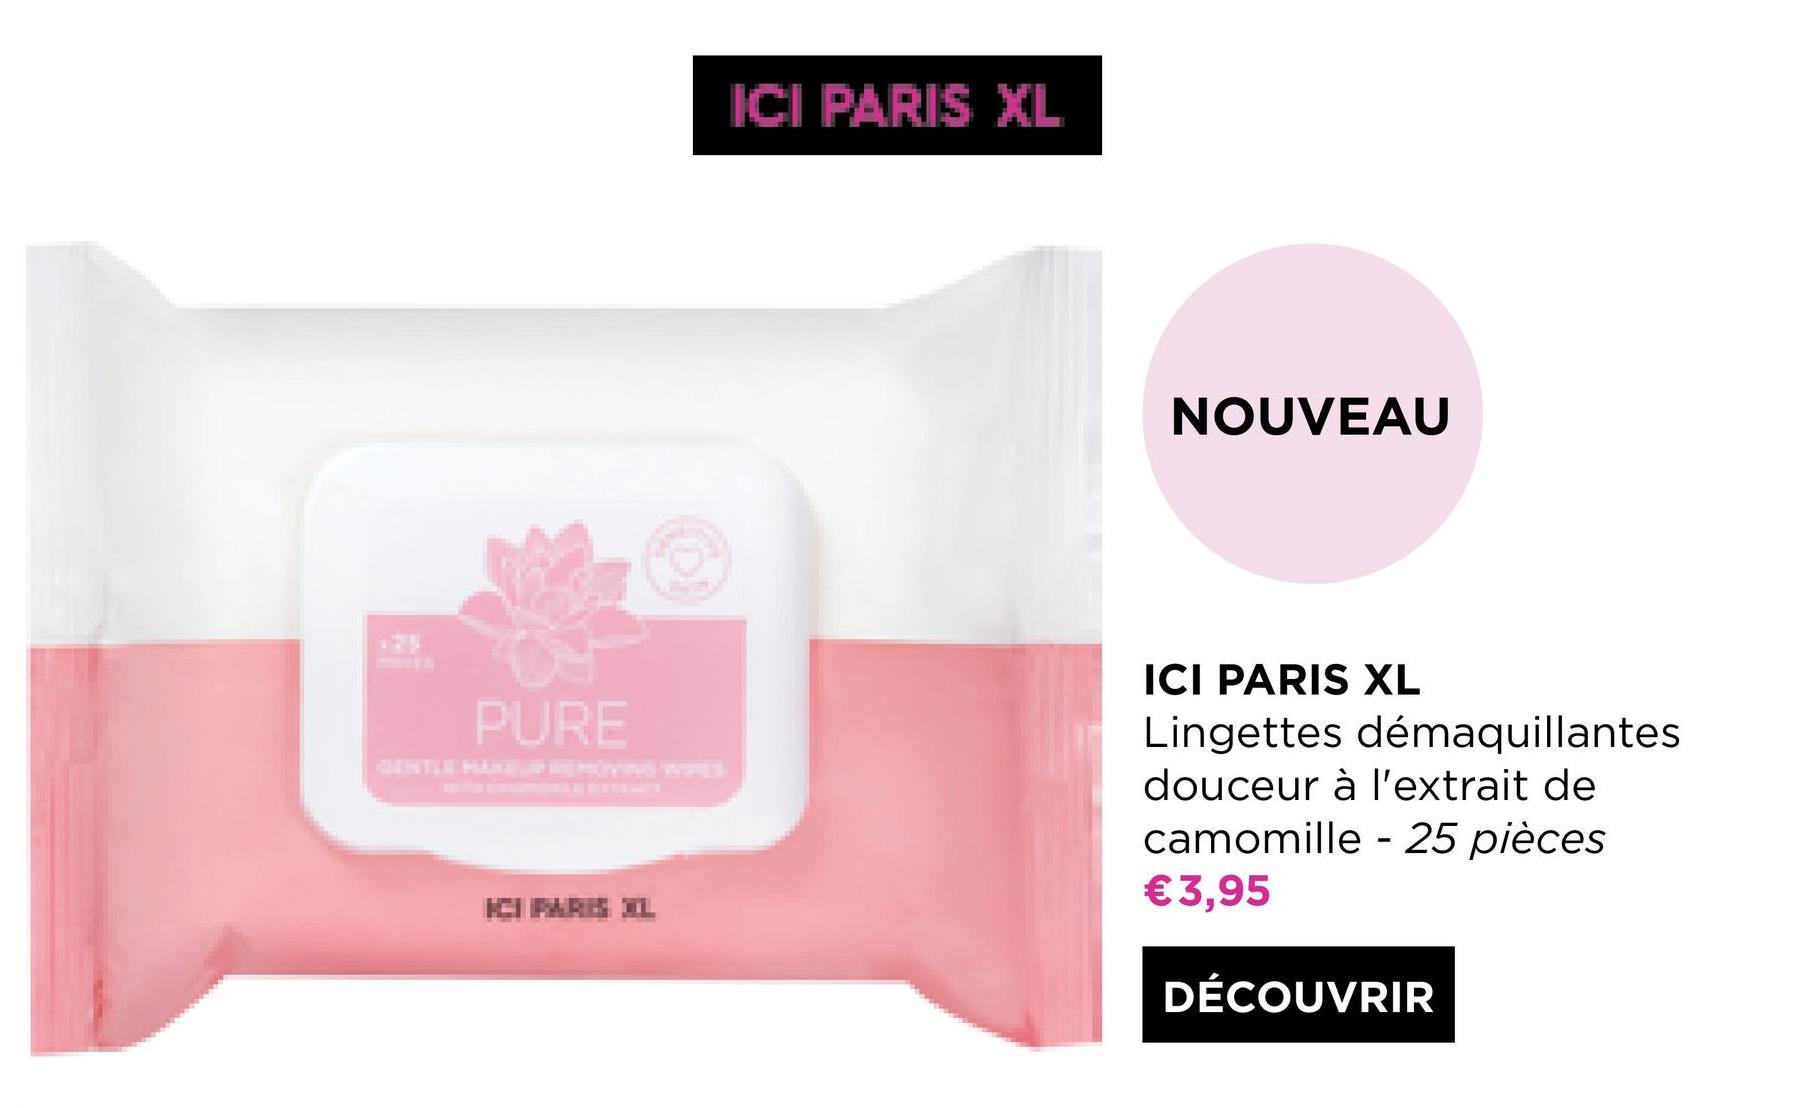 ICI PARIS XL
NOUVEAU
PURE
ICI PARIS XL
Lingettes démaquillantes
douceur à l'extrait de
camomille - 25 pièces
€3,95
ICIPARE IL
DÉCOUVRIR
